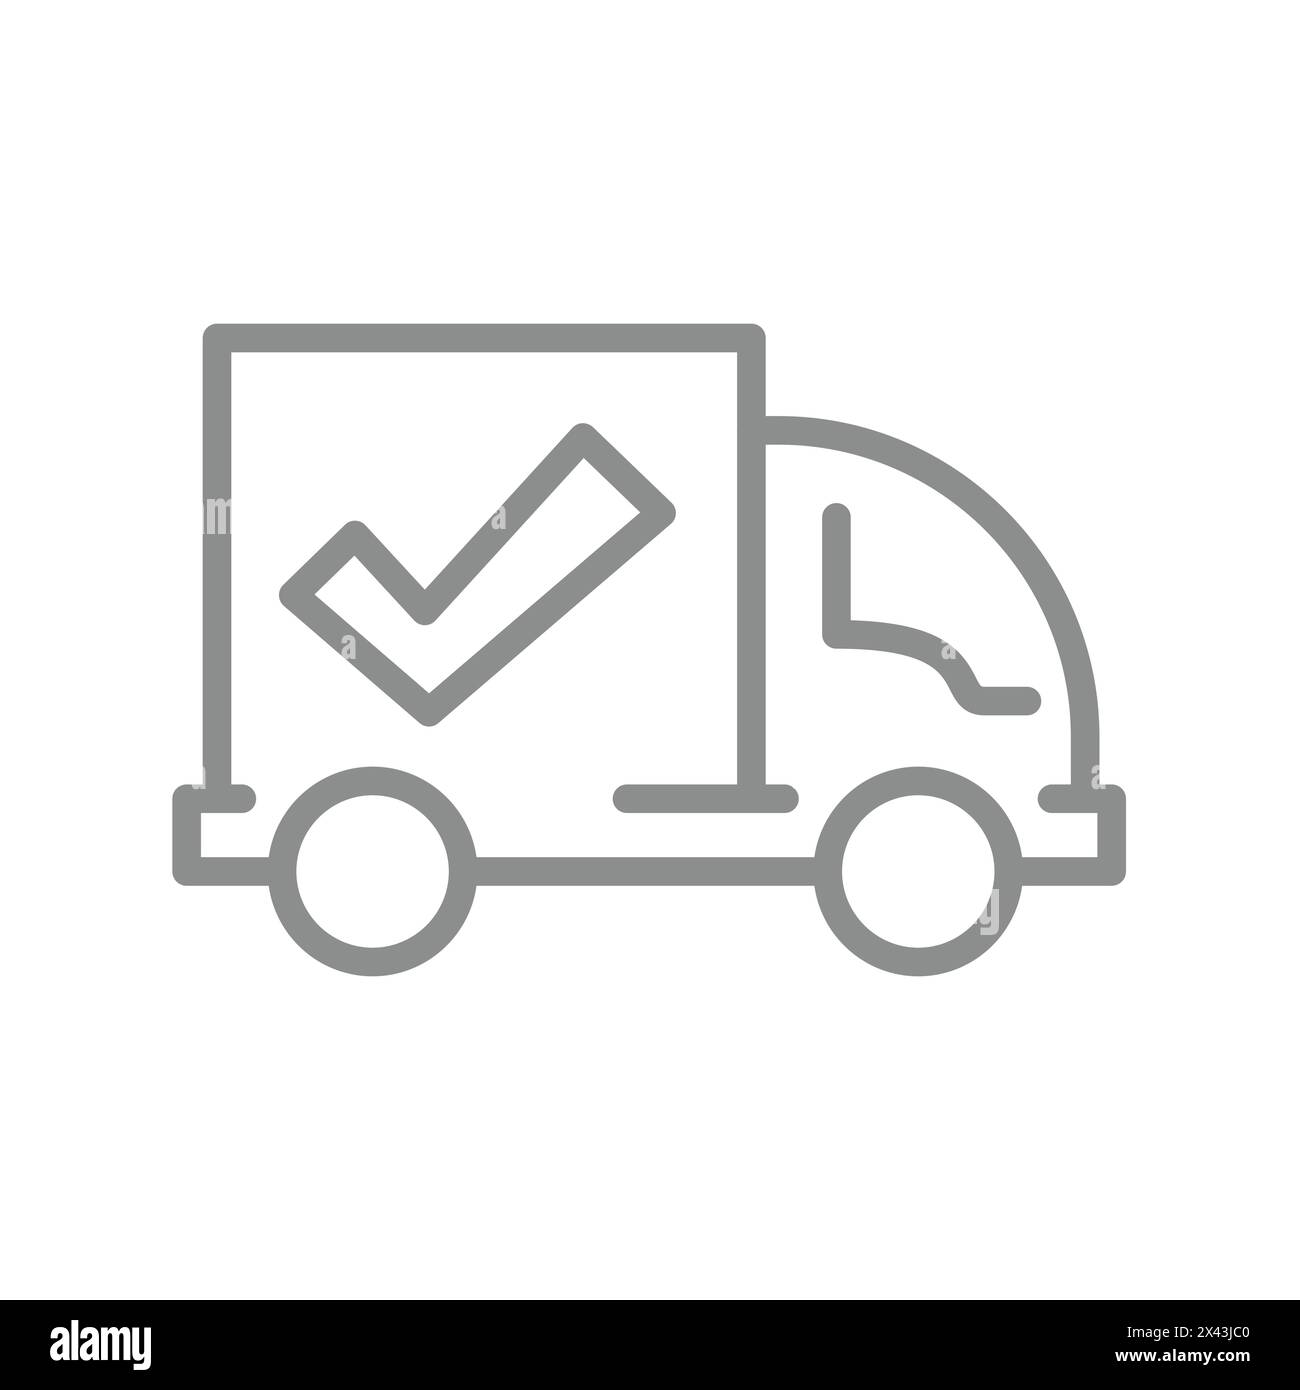 Camion de livraison avec coche. Icône de vecteur d'expédition de courrier livré. Illustration de Vecteur